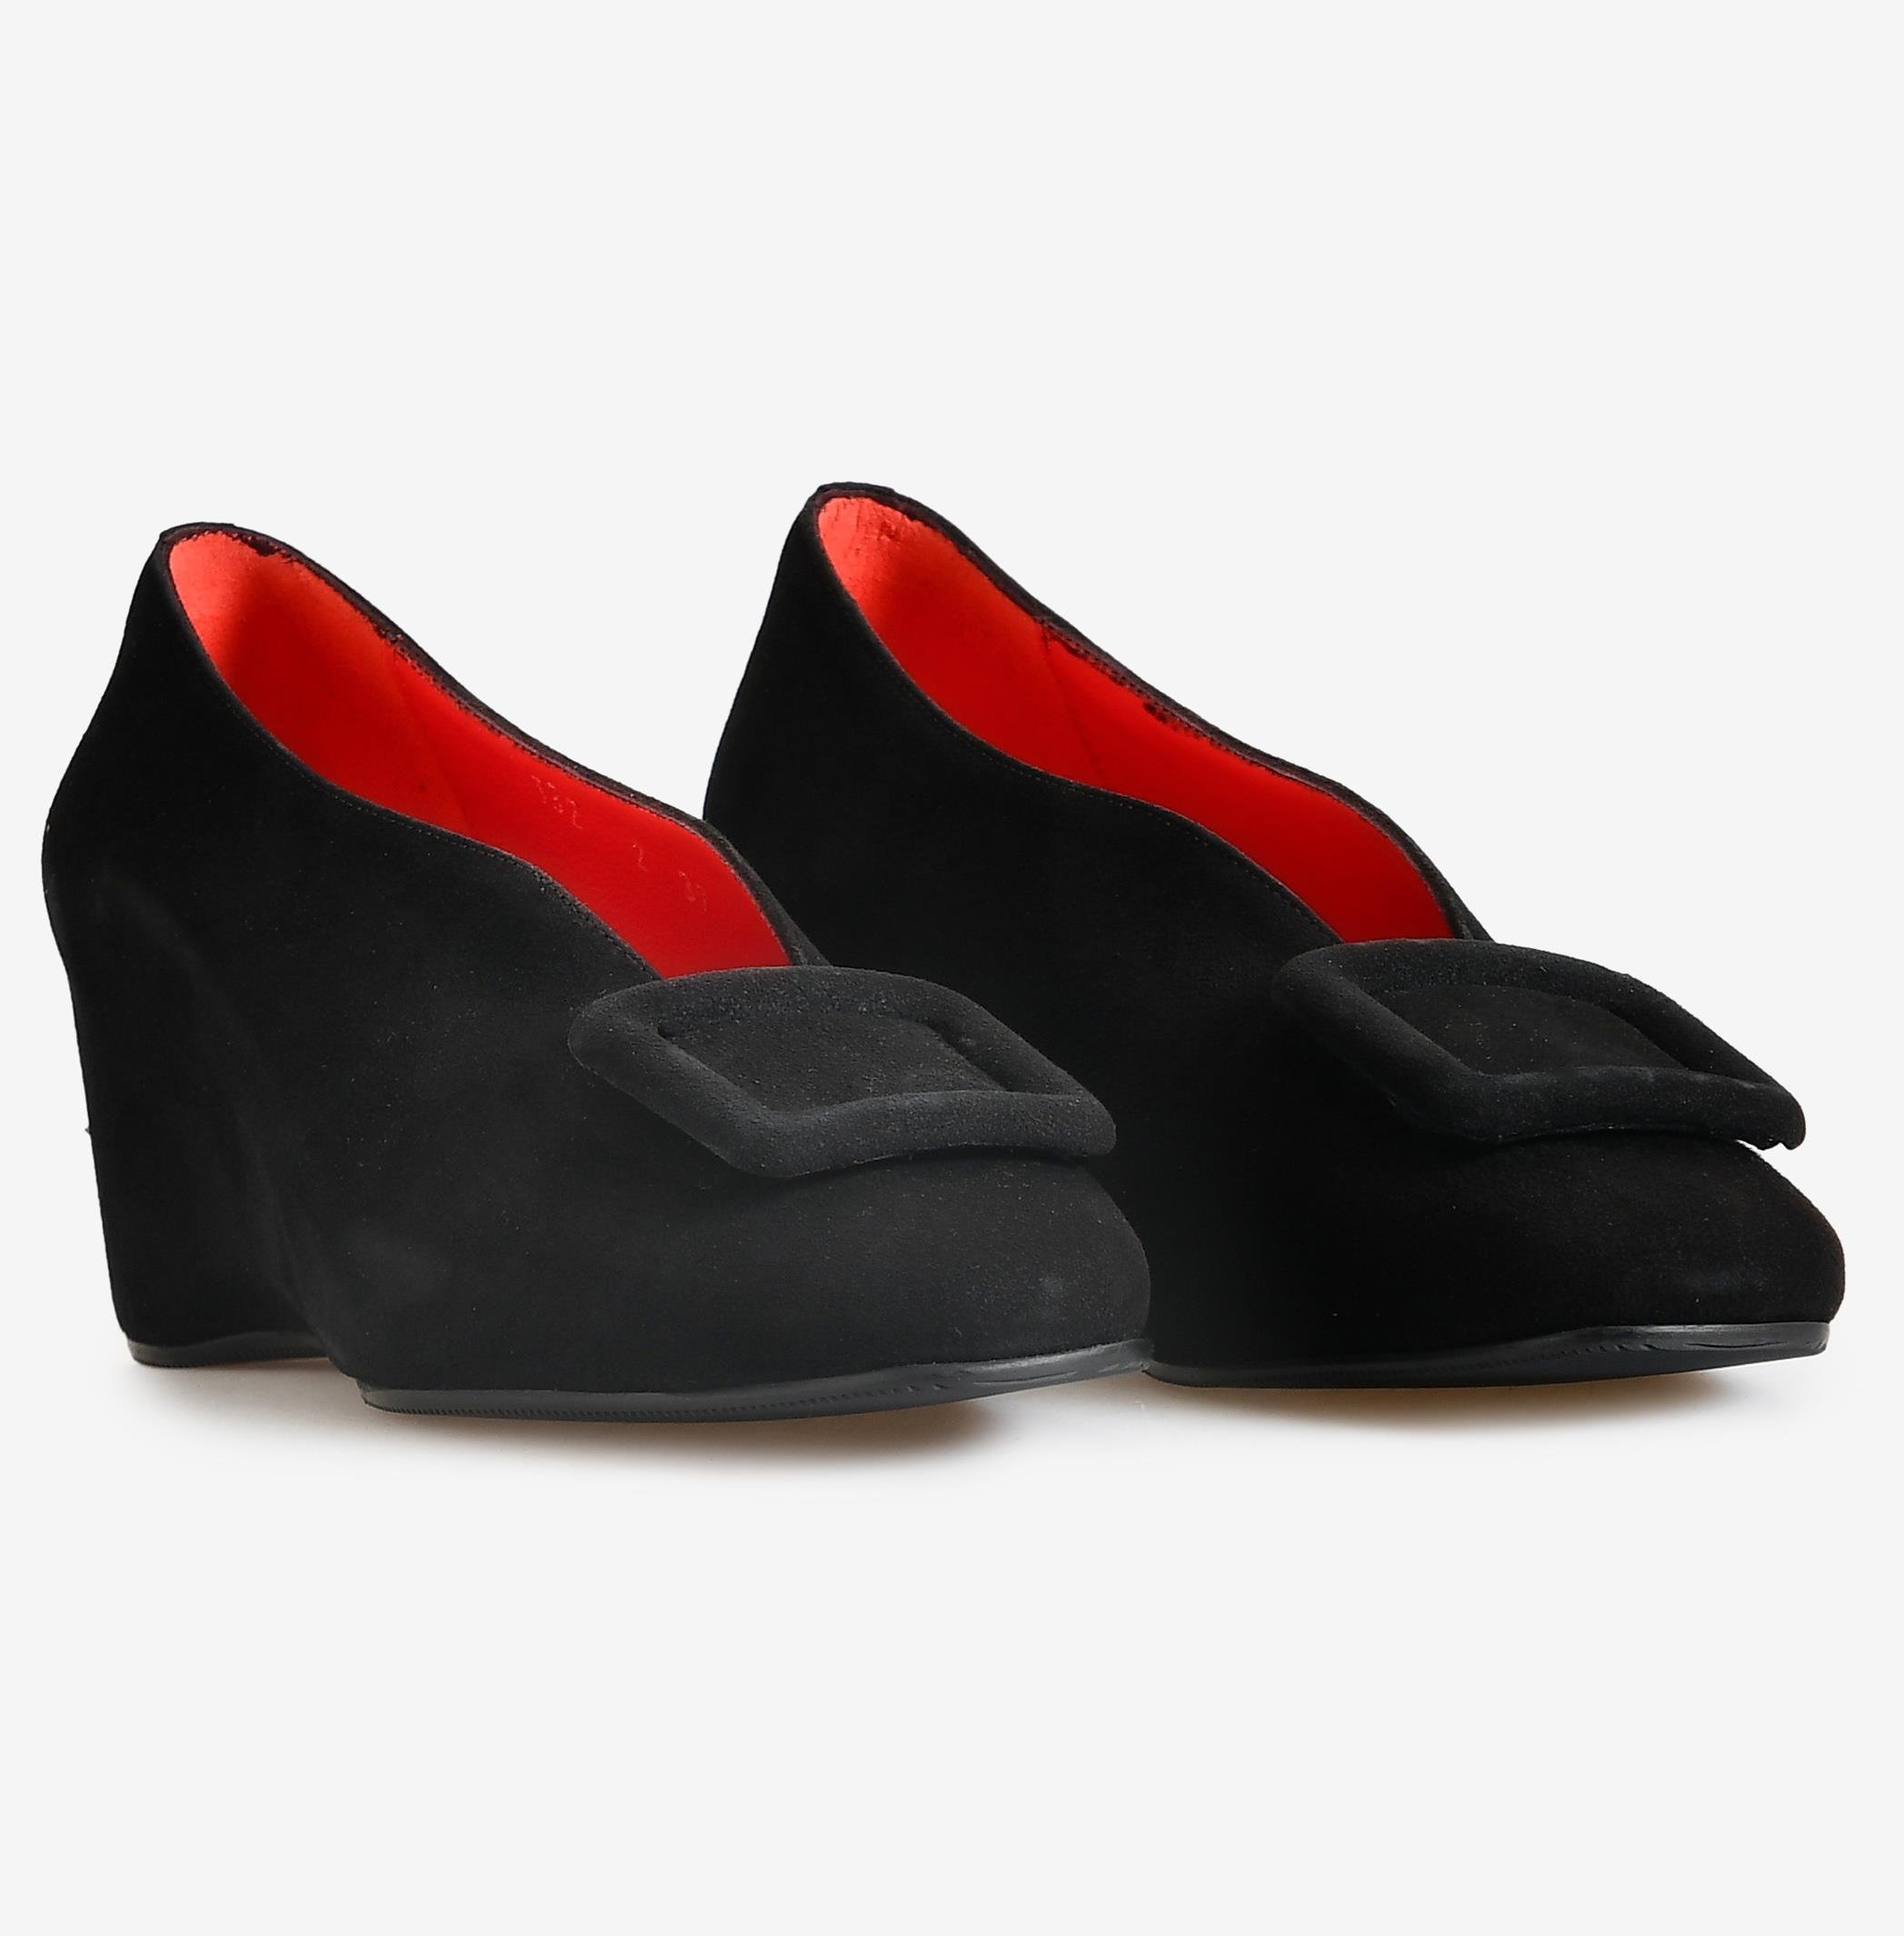 Siyah Süet Kadın Dolgu Topuk Ayakkabı | Flower Ayakkabı